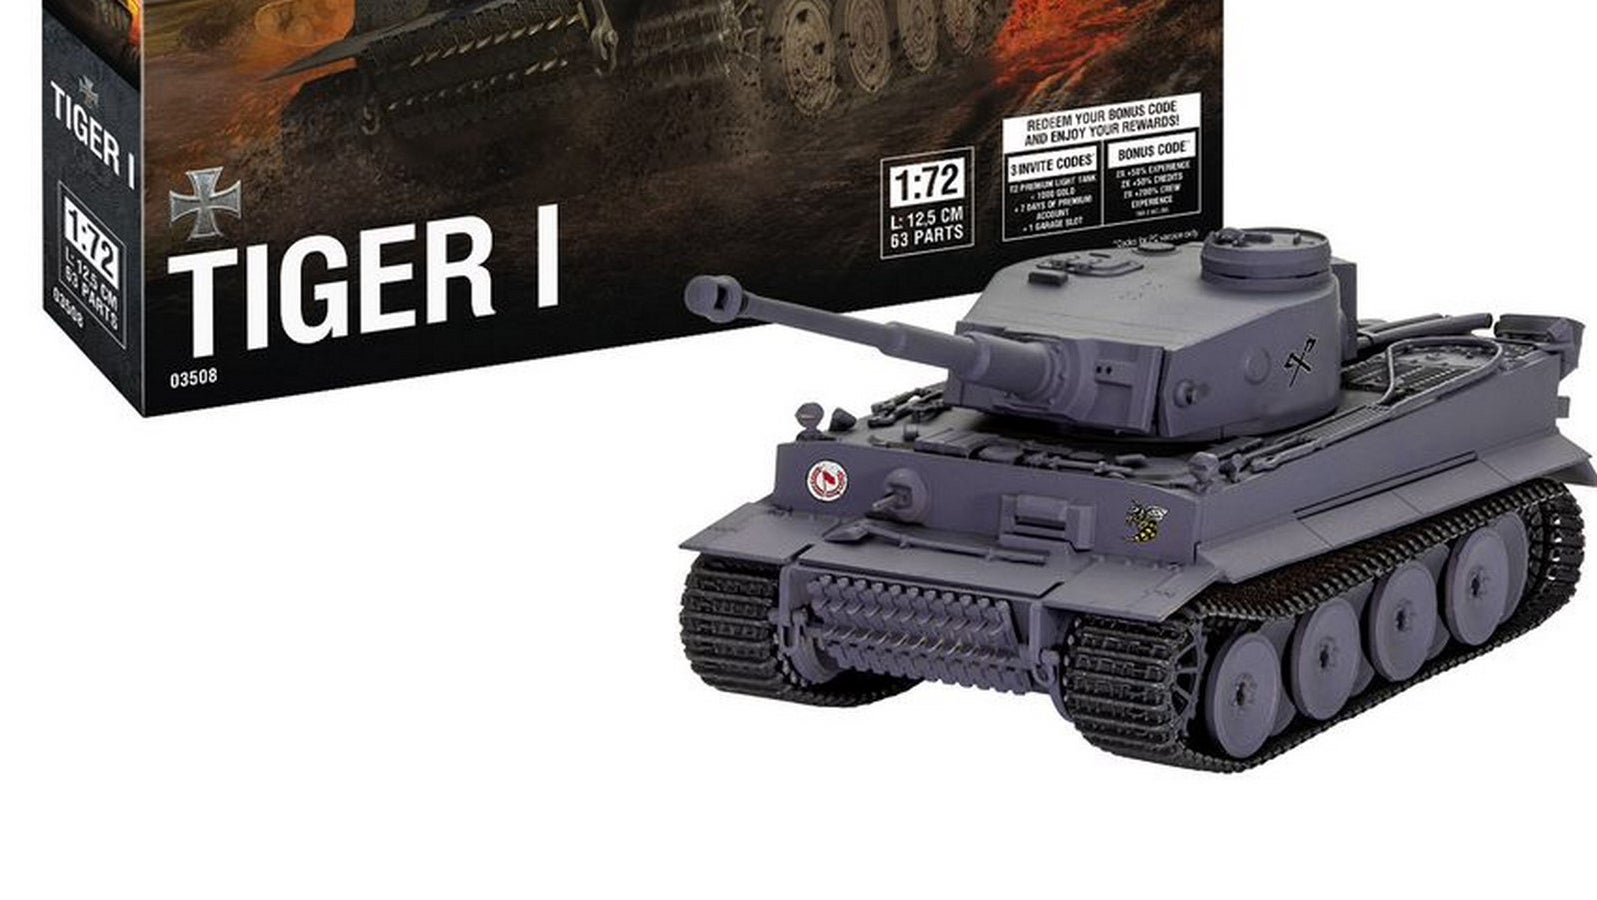 Bilder zu World of Tanks: Revell lässt euch jetzt Panzer aus dem Spiel nachbauen